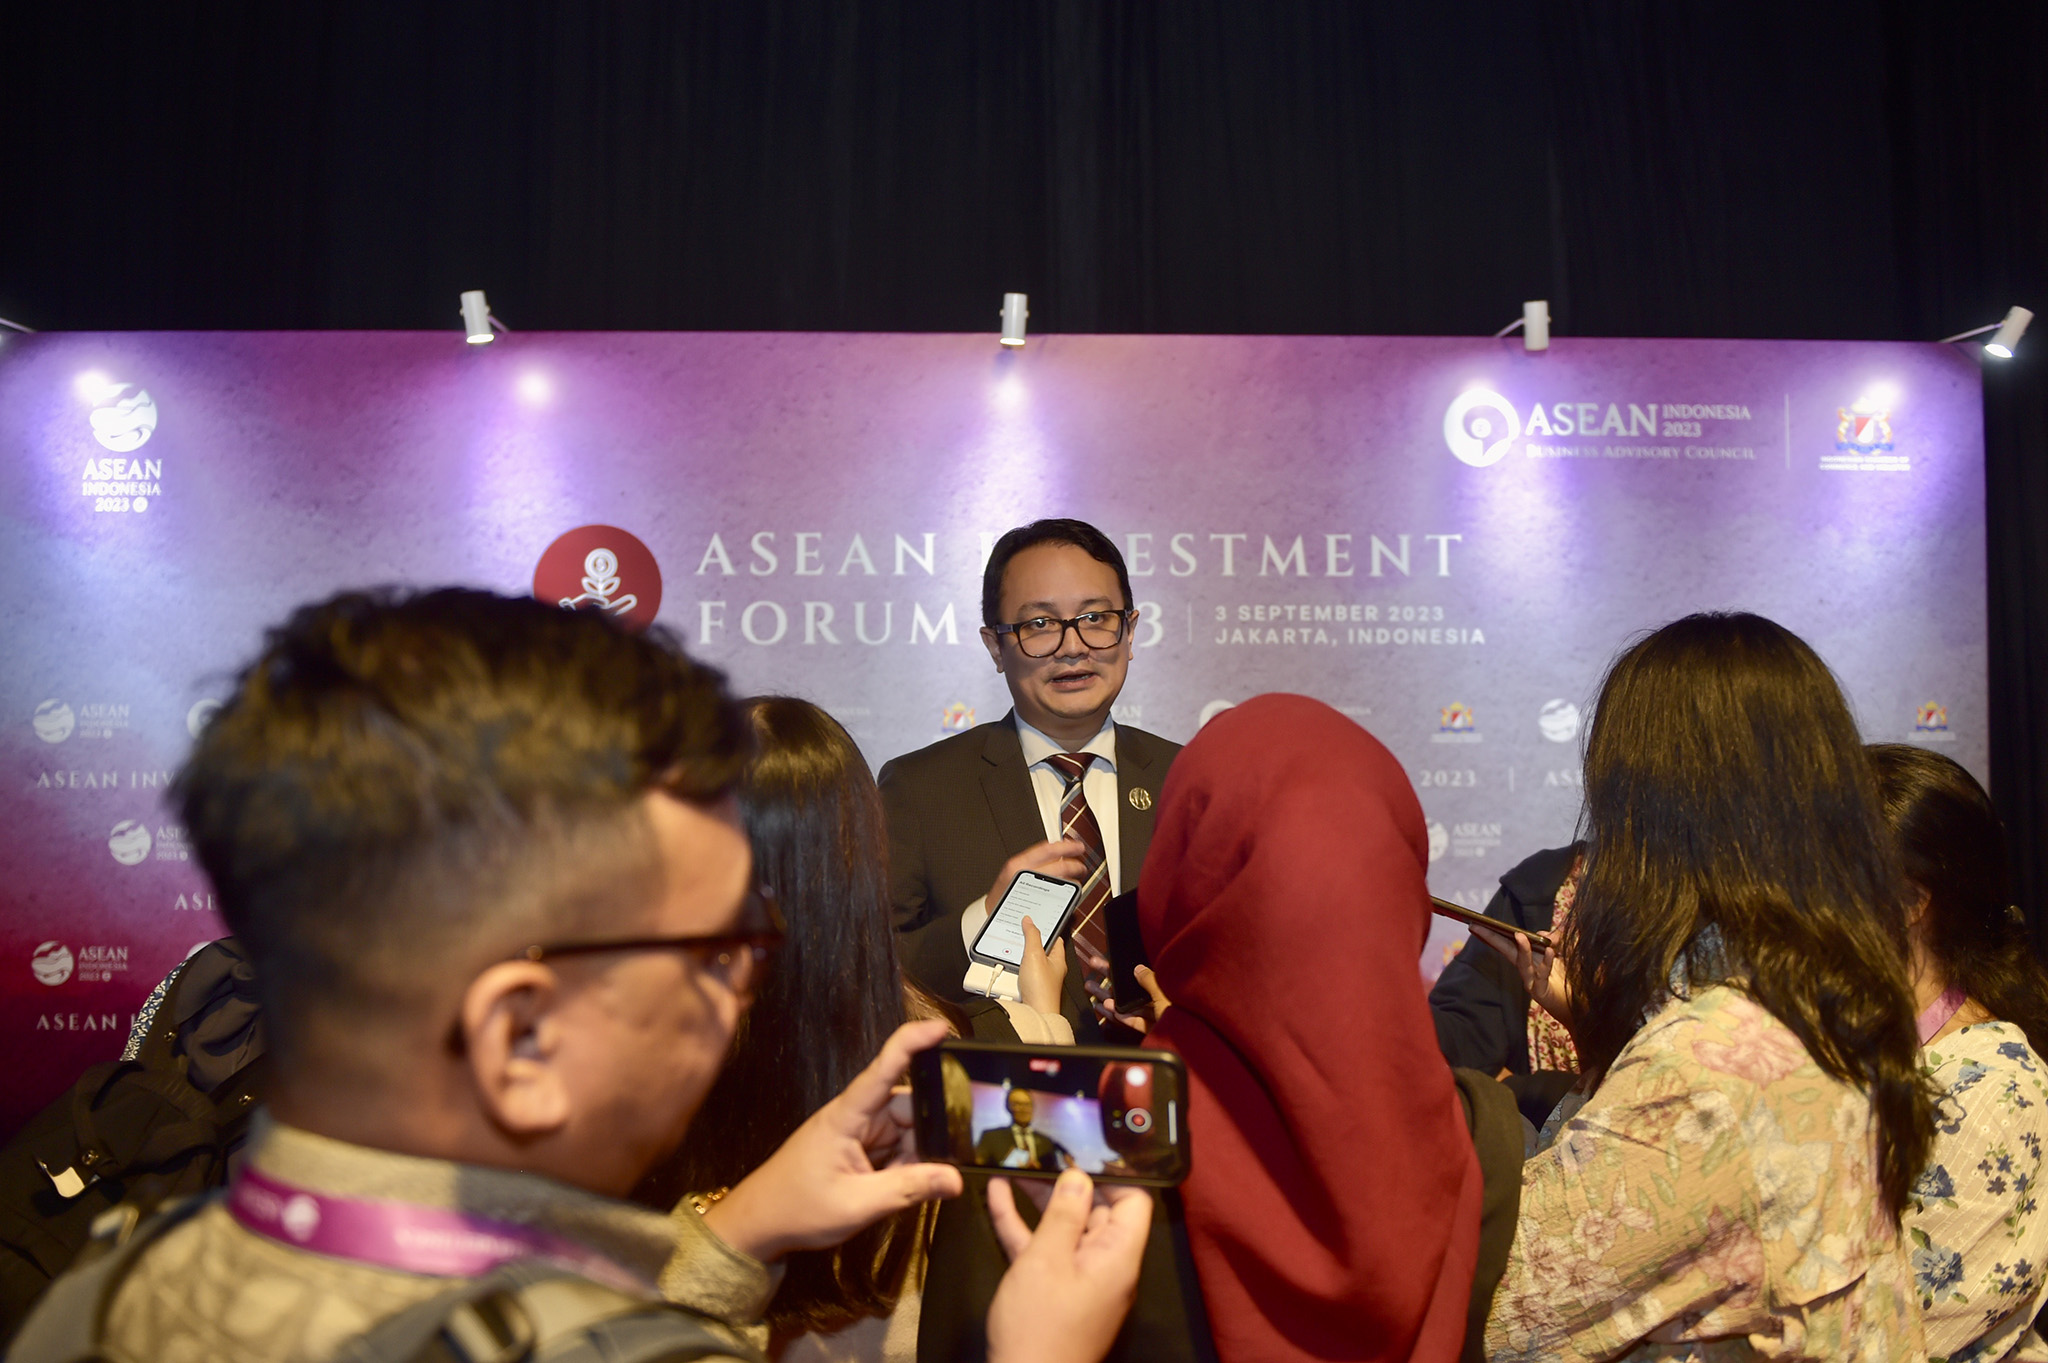 ASEAN Investment Forum 2023 bertujuan untuk mempromosikan dan menyoroti kemajuan besar dan potensi kawasan ASEAN sebagai permata bagi peluang investasi dan pusat talenta.